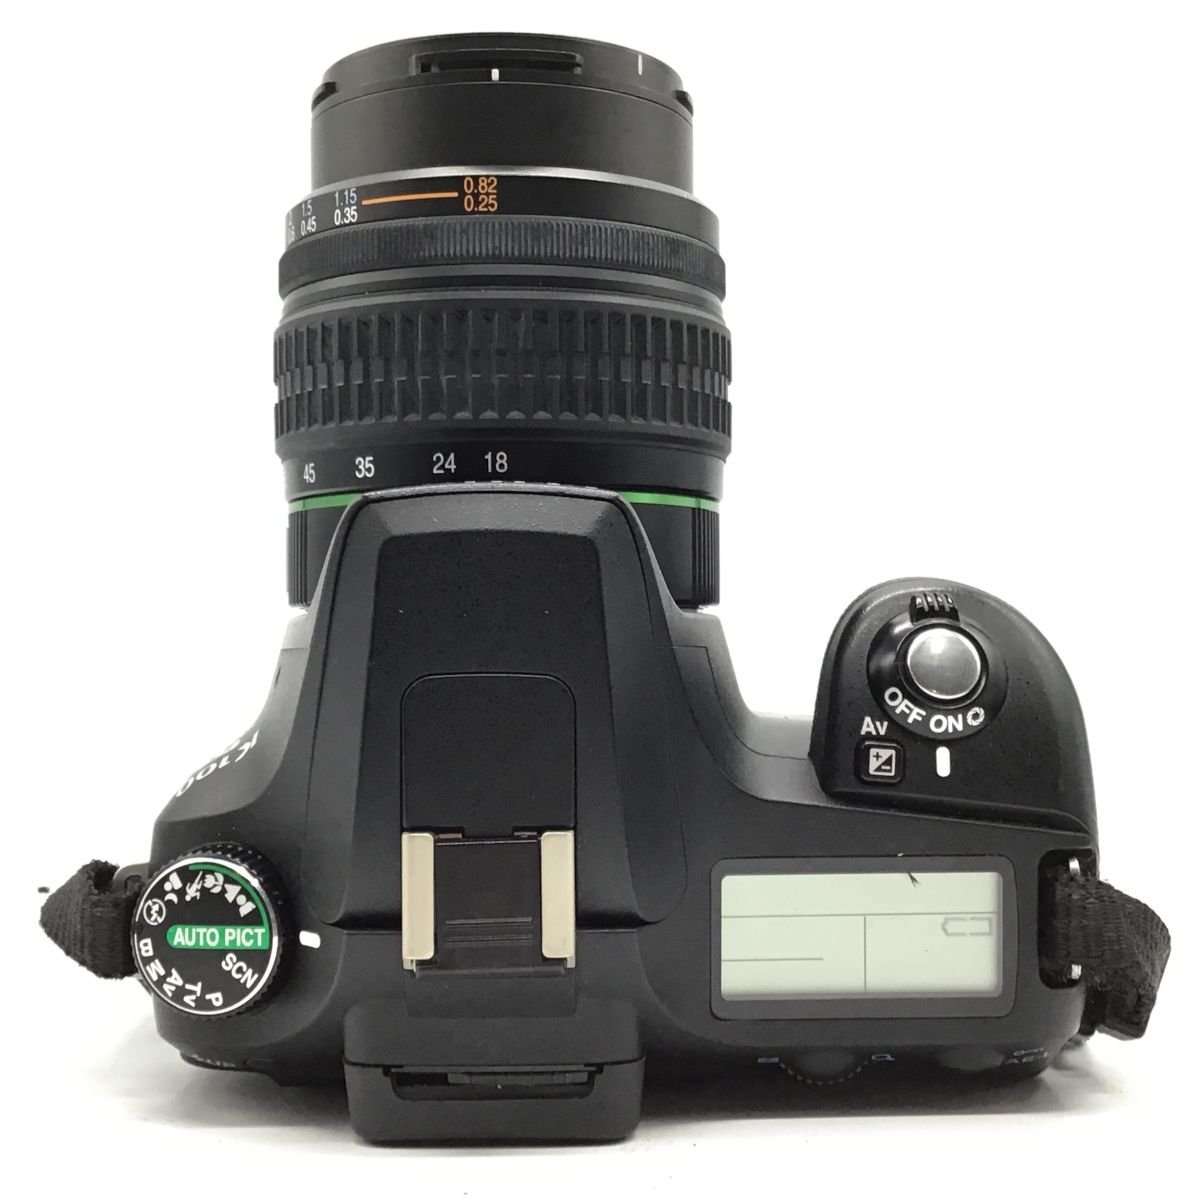 カメラ Pentax K100 D Super + SMC Pentax DA 3.5-5.6 18-55mm AL デジタル一眼レフ セット品 ジャンク品 [1303HJ]_画像6